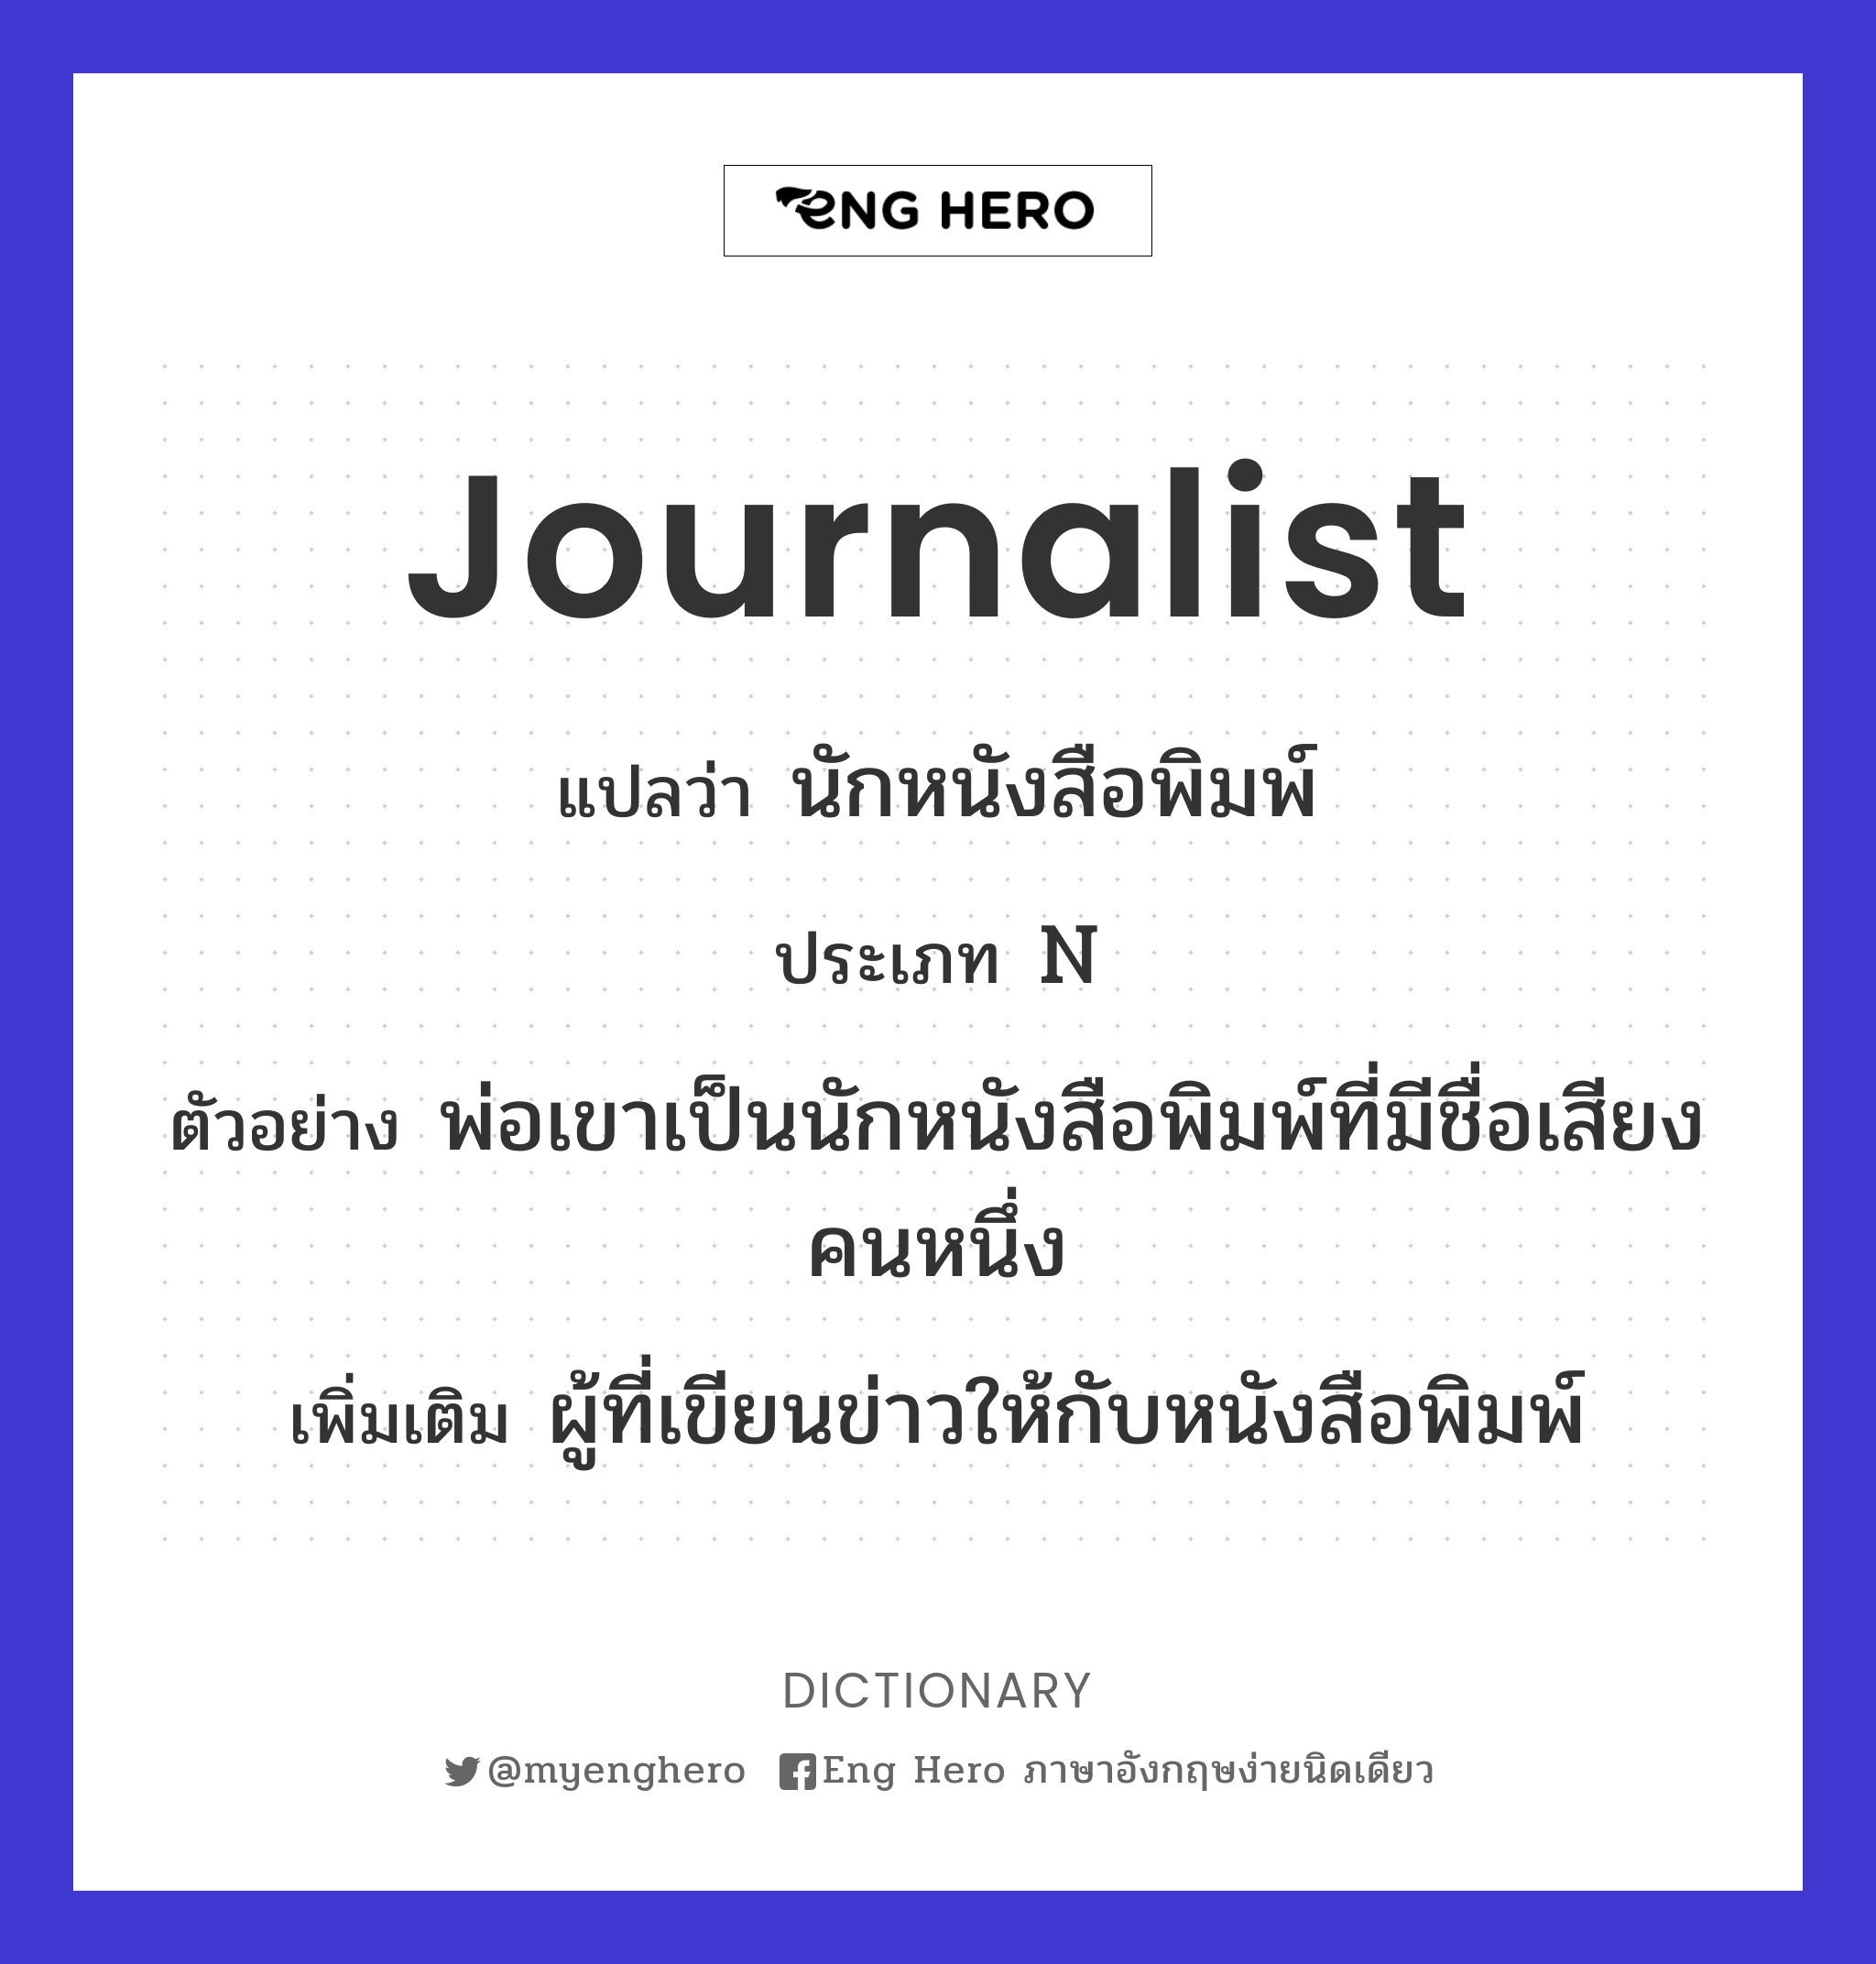 journalist